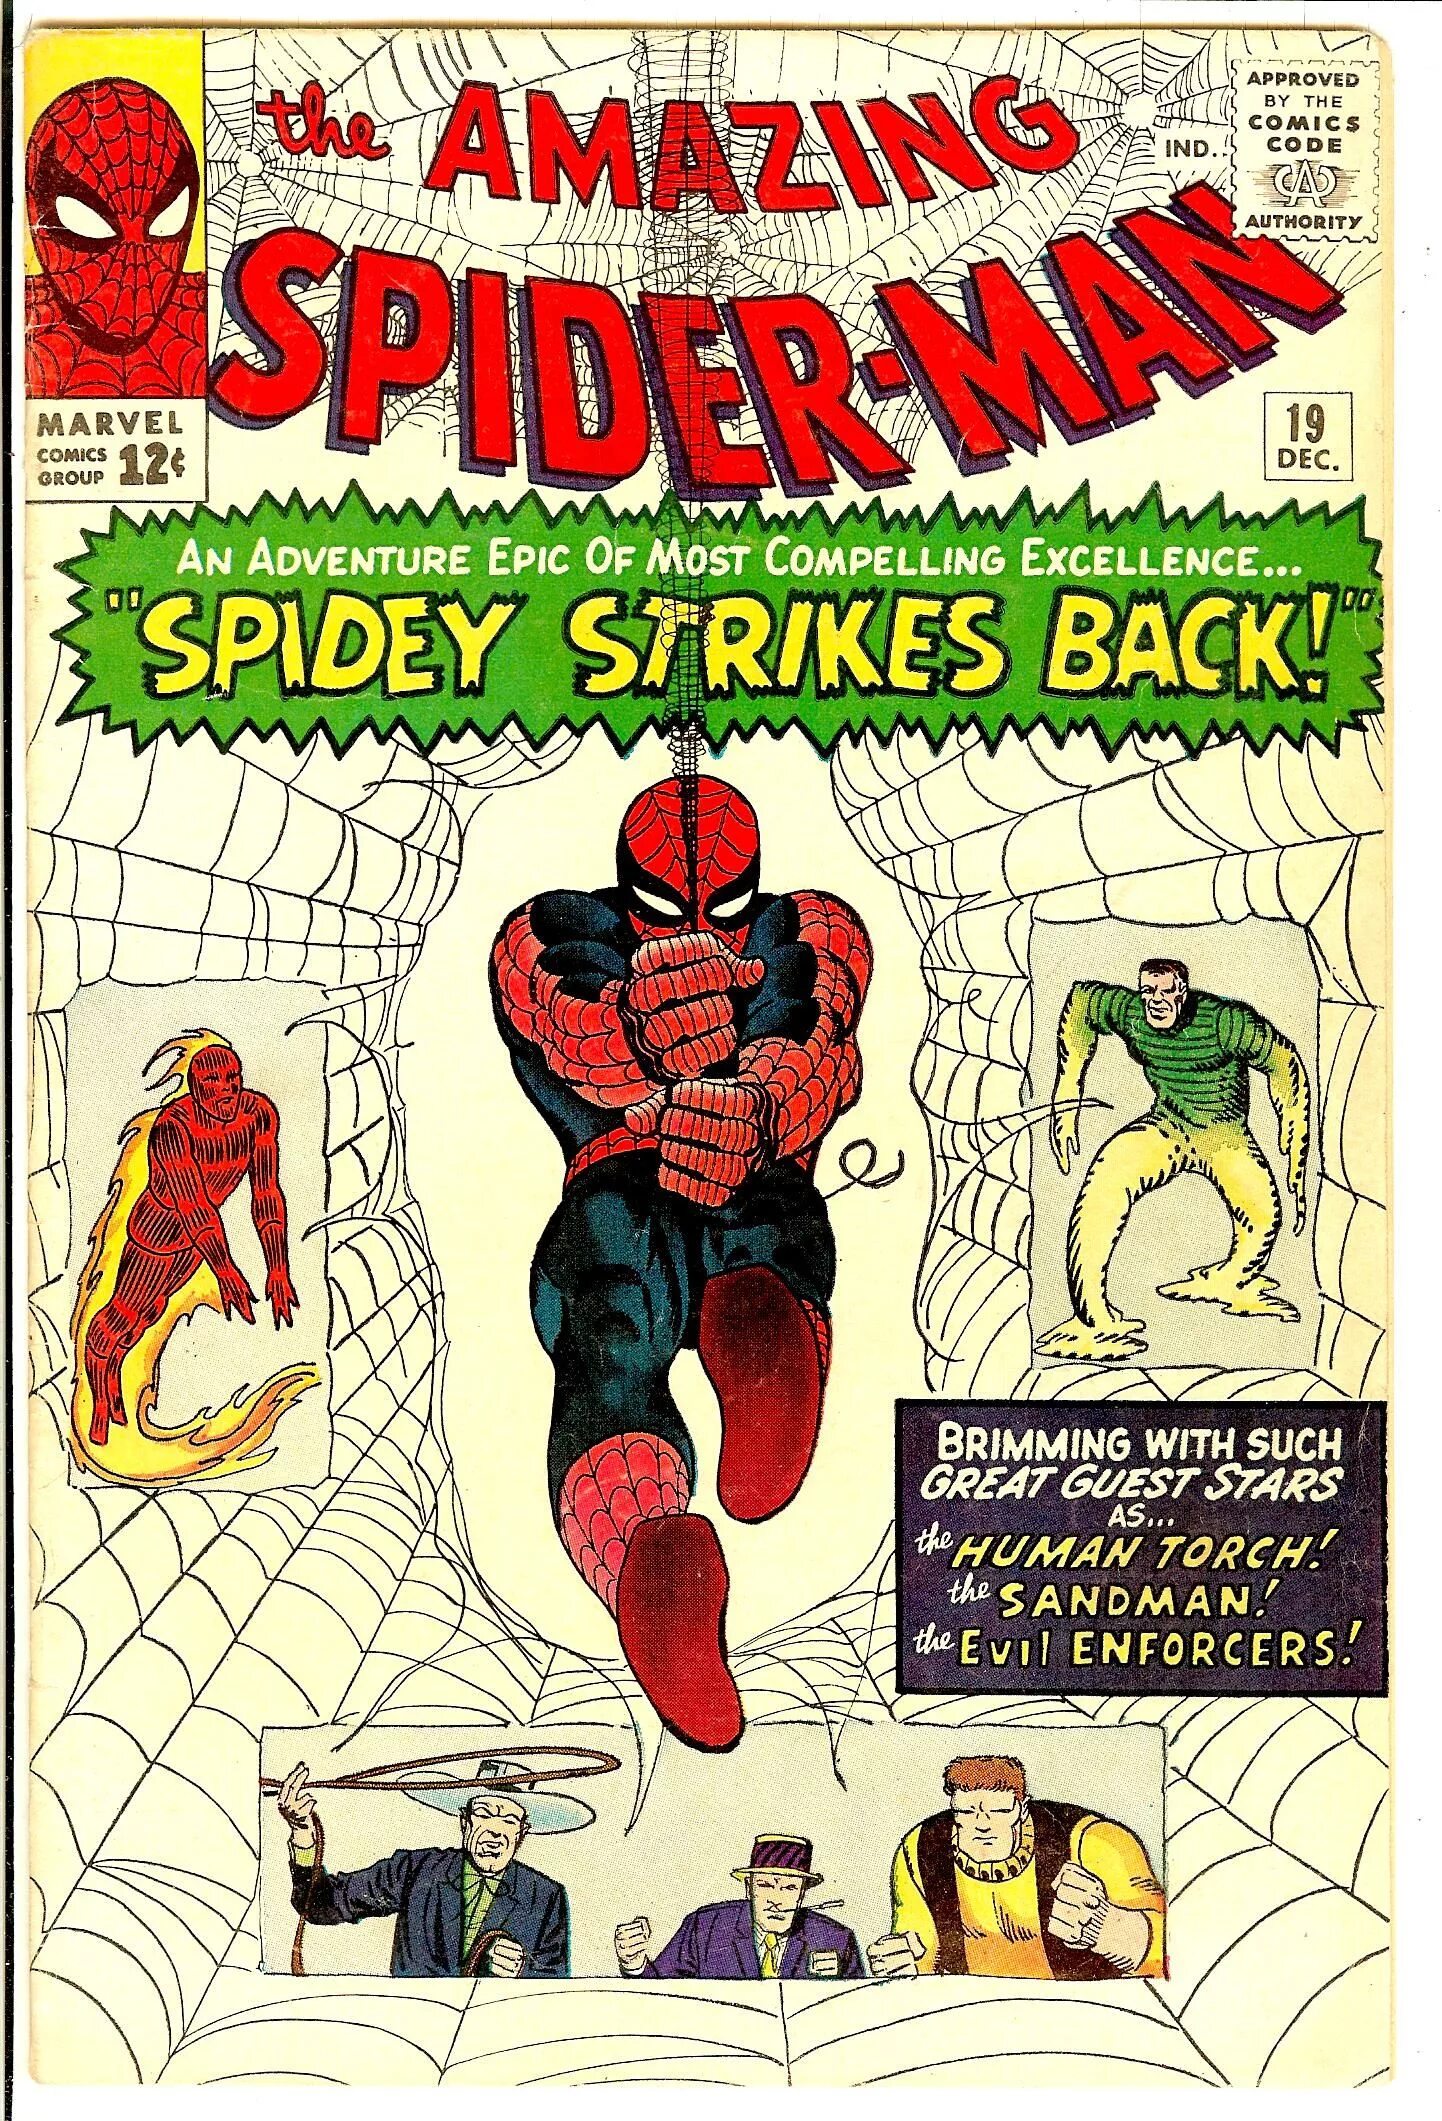 Удивительный человек рассказ. Amazing Spider man 1 комикс. Первый комикс человек паук 1963. Первый комикс про человека паука. Комикс Марвел удивительный человек паук.